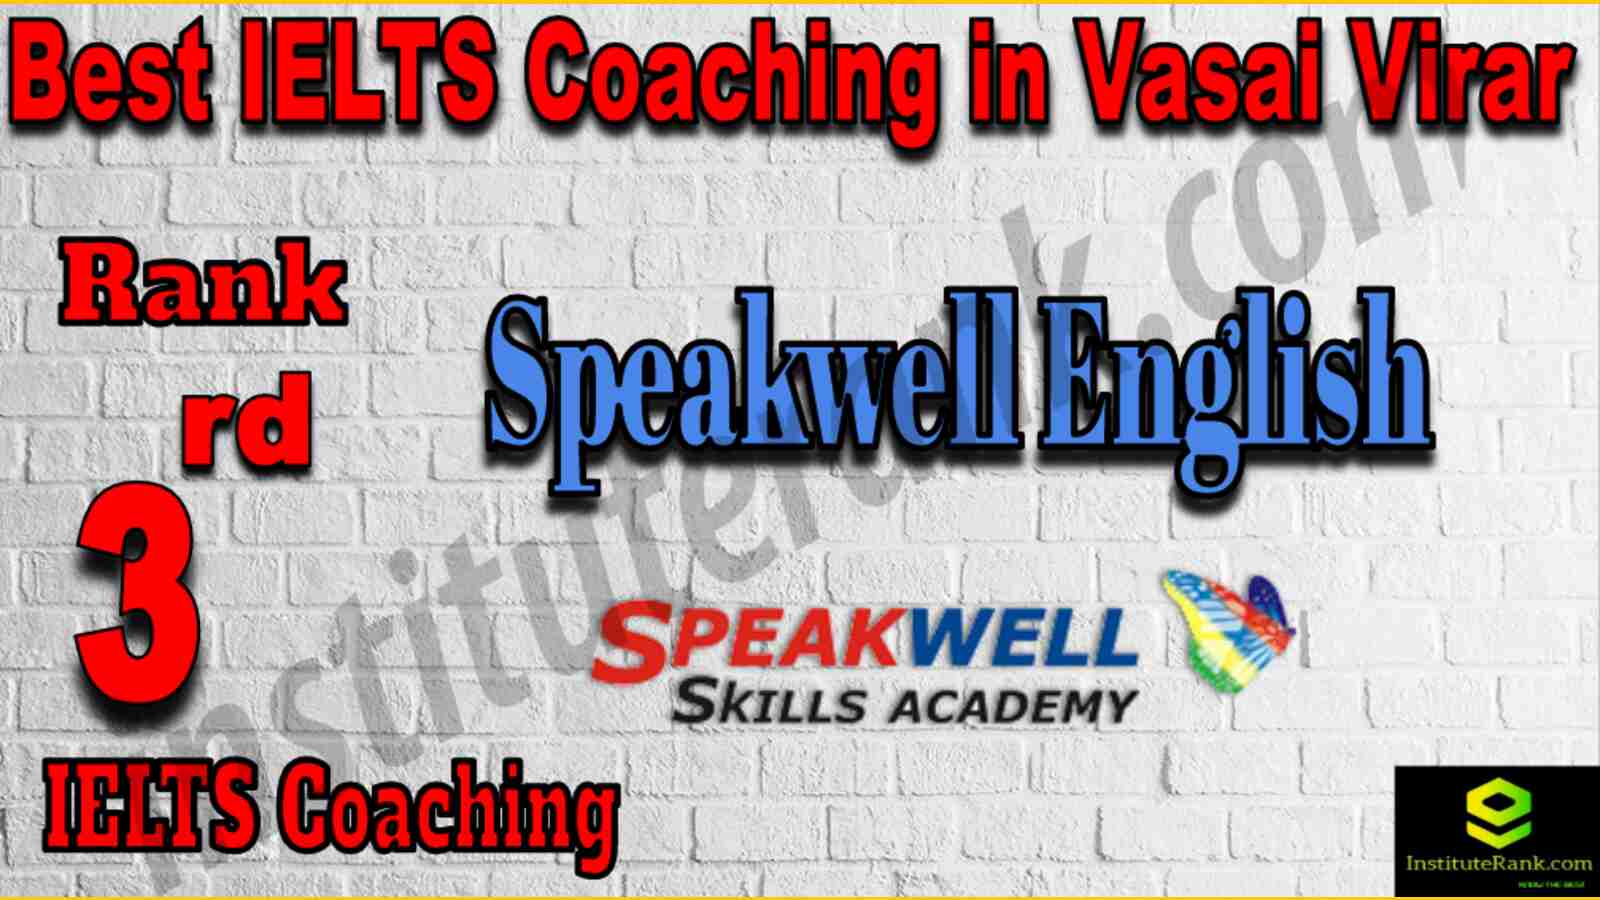 3rd Best IELTS Coaching in Vasai Virar